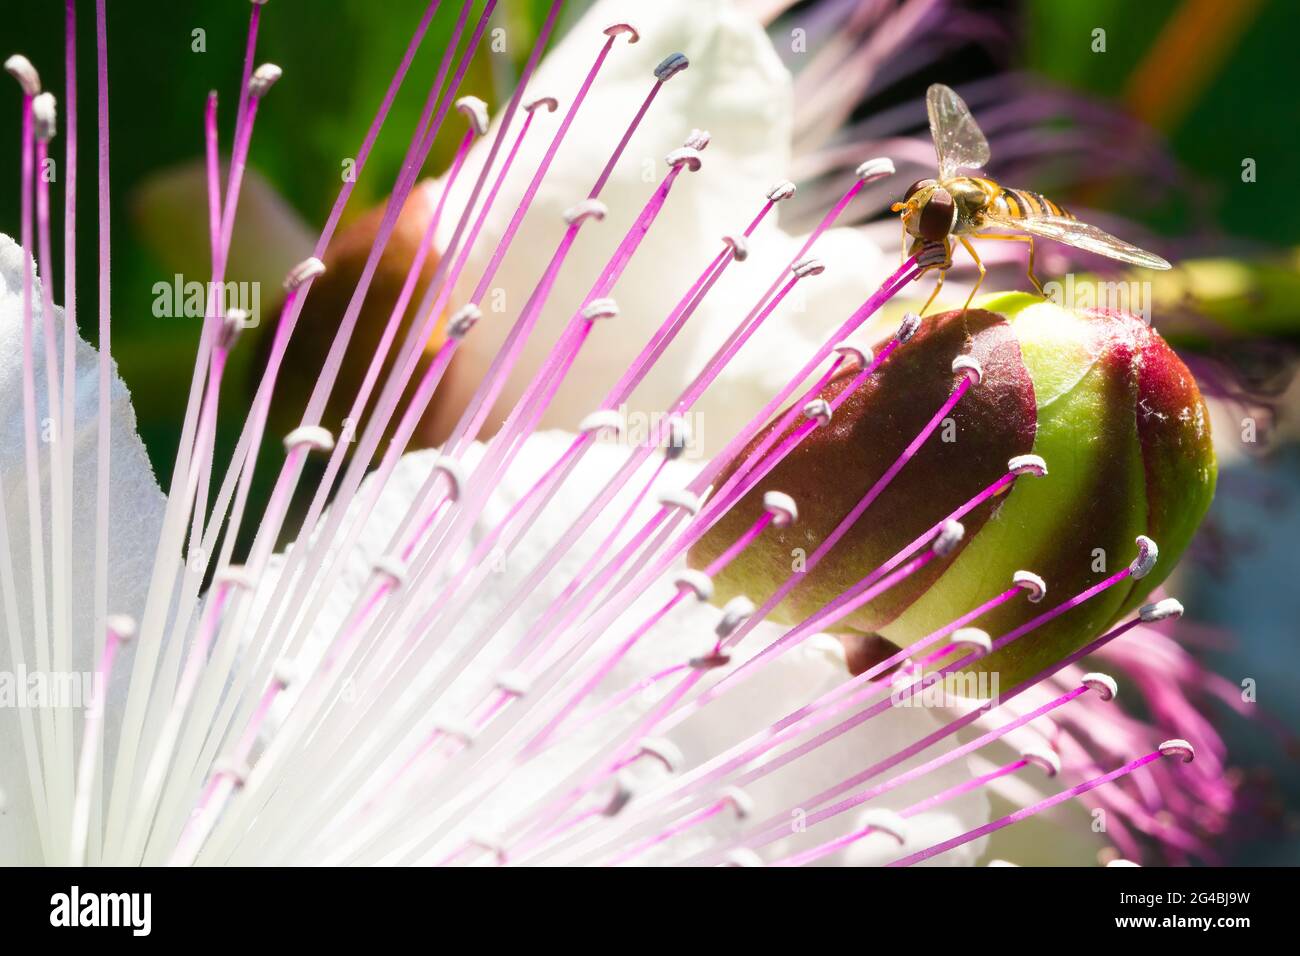 Macro fotografia di un volata in cintura (Syrphidae) su un fiore di cappero Foto Stock